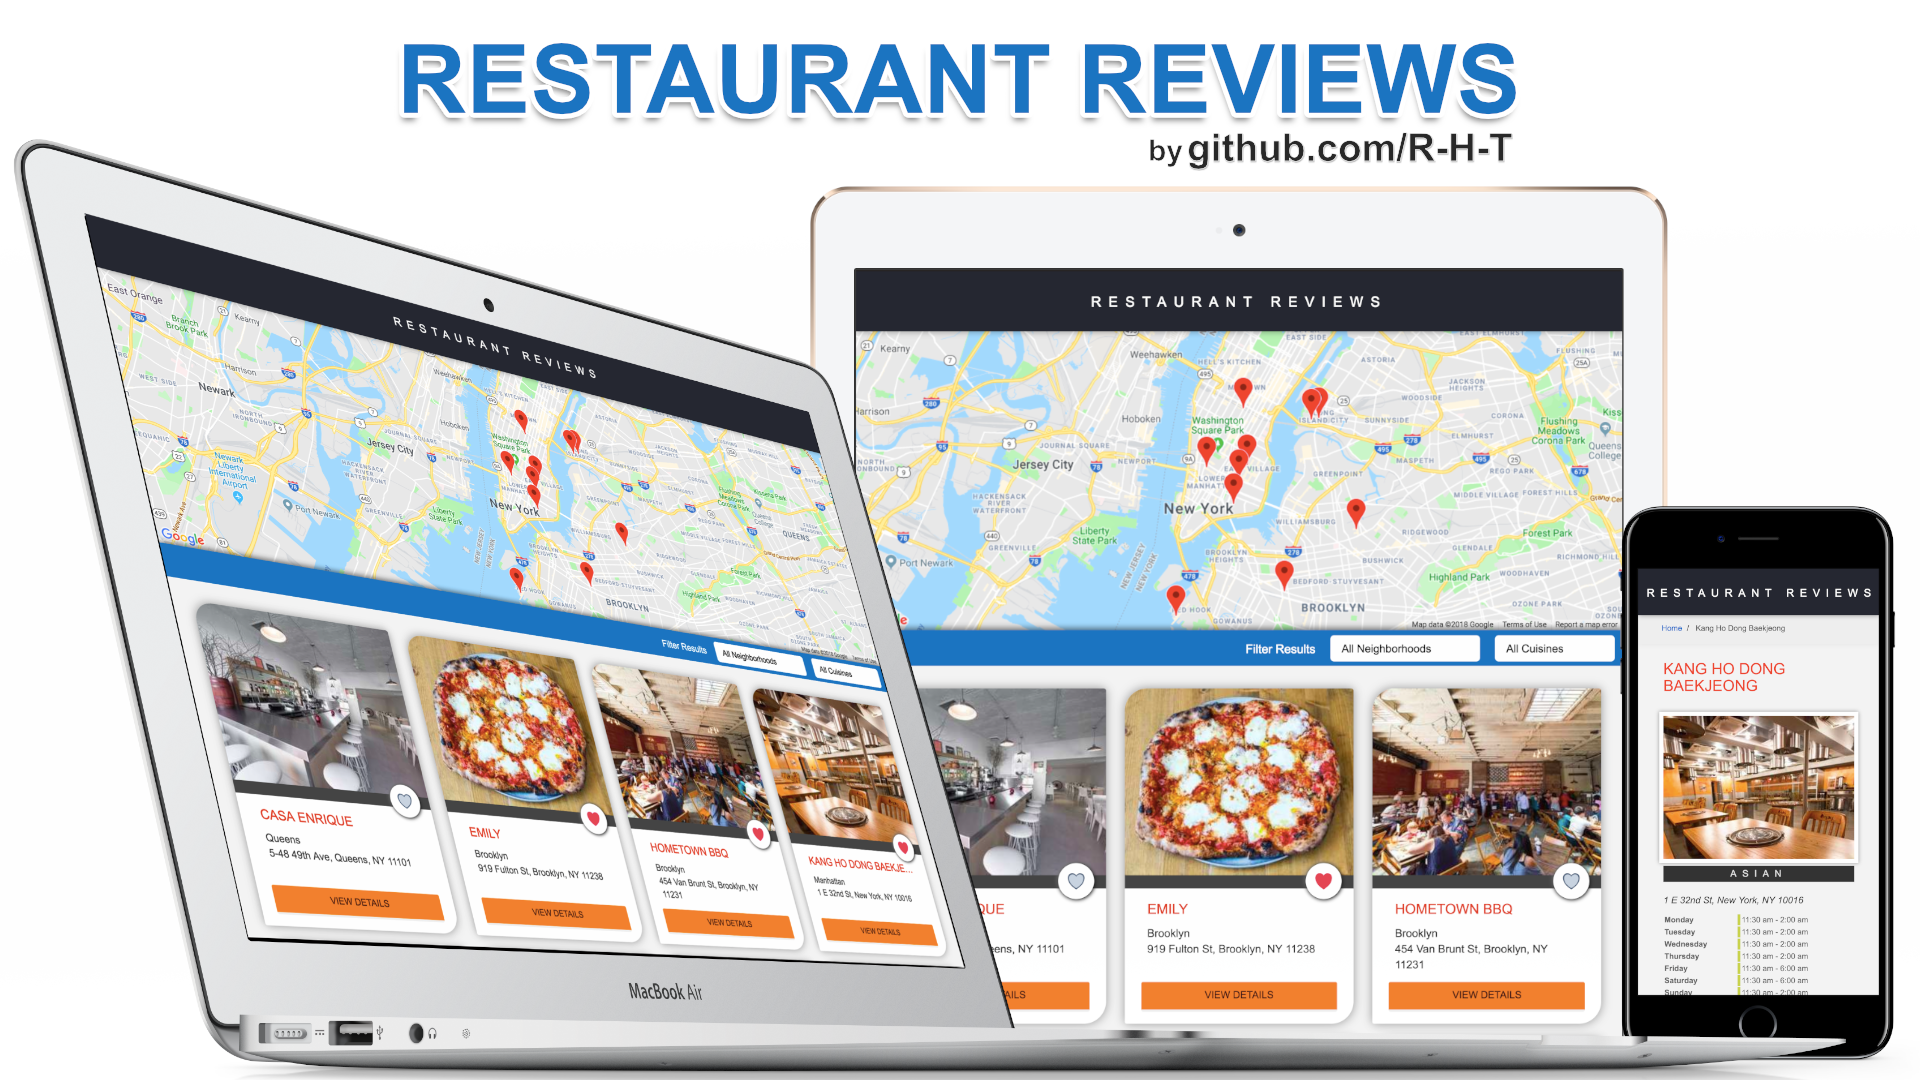 r-h-t_mws_restaurant_reviews_fhd.png